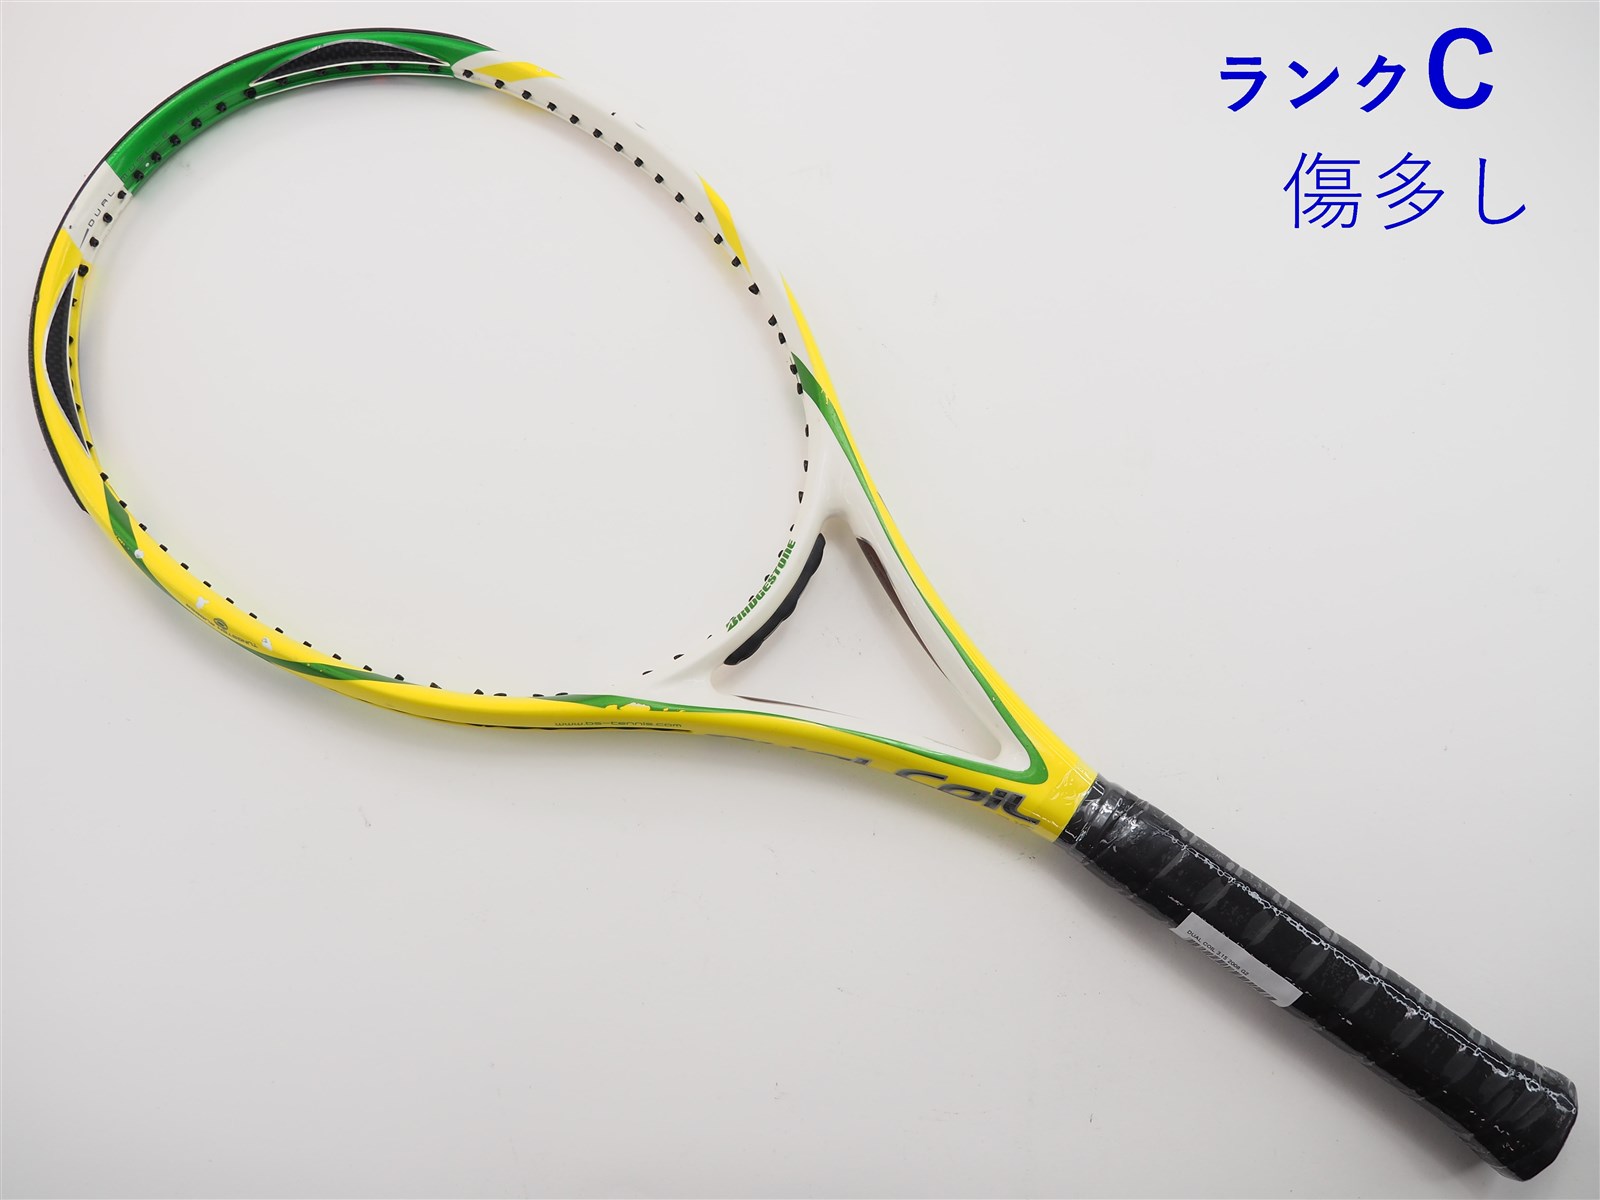 2613円 【おすすめ】 中古 テニスラケット ブリヂストン デュアルコイル 3.0 2007年モデル BRIDGESTONE DUAL COIL グ